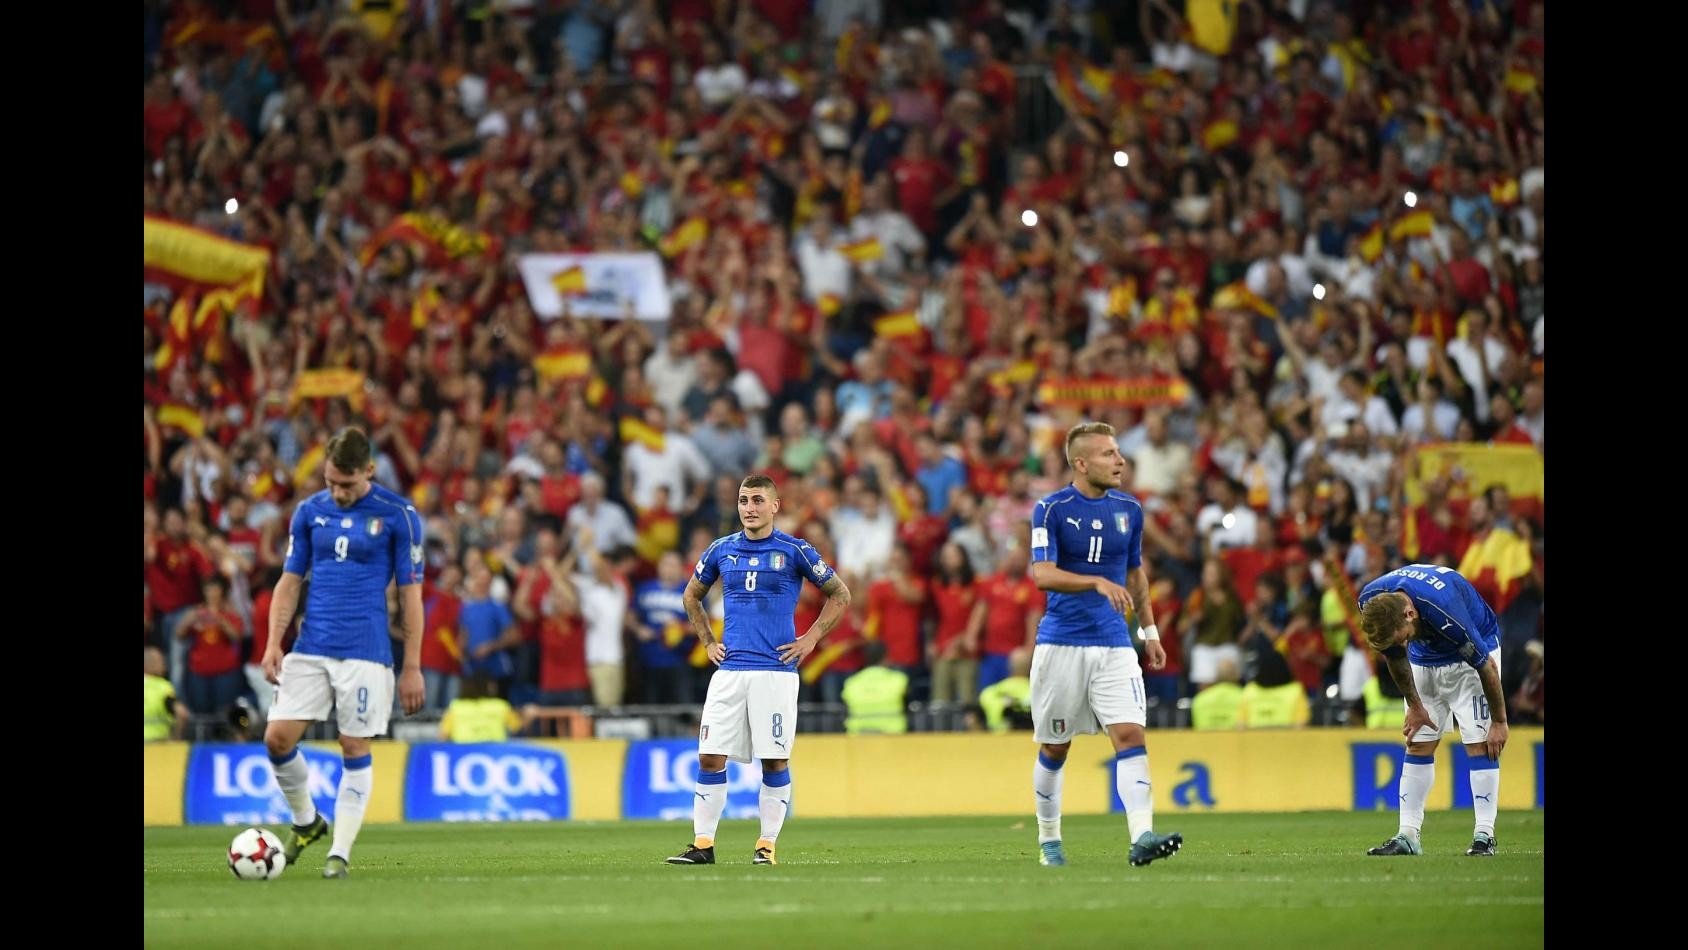 Mondiali 2018, Spagna-italia: la partita per immagini